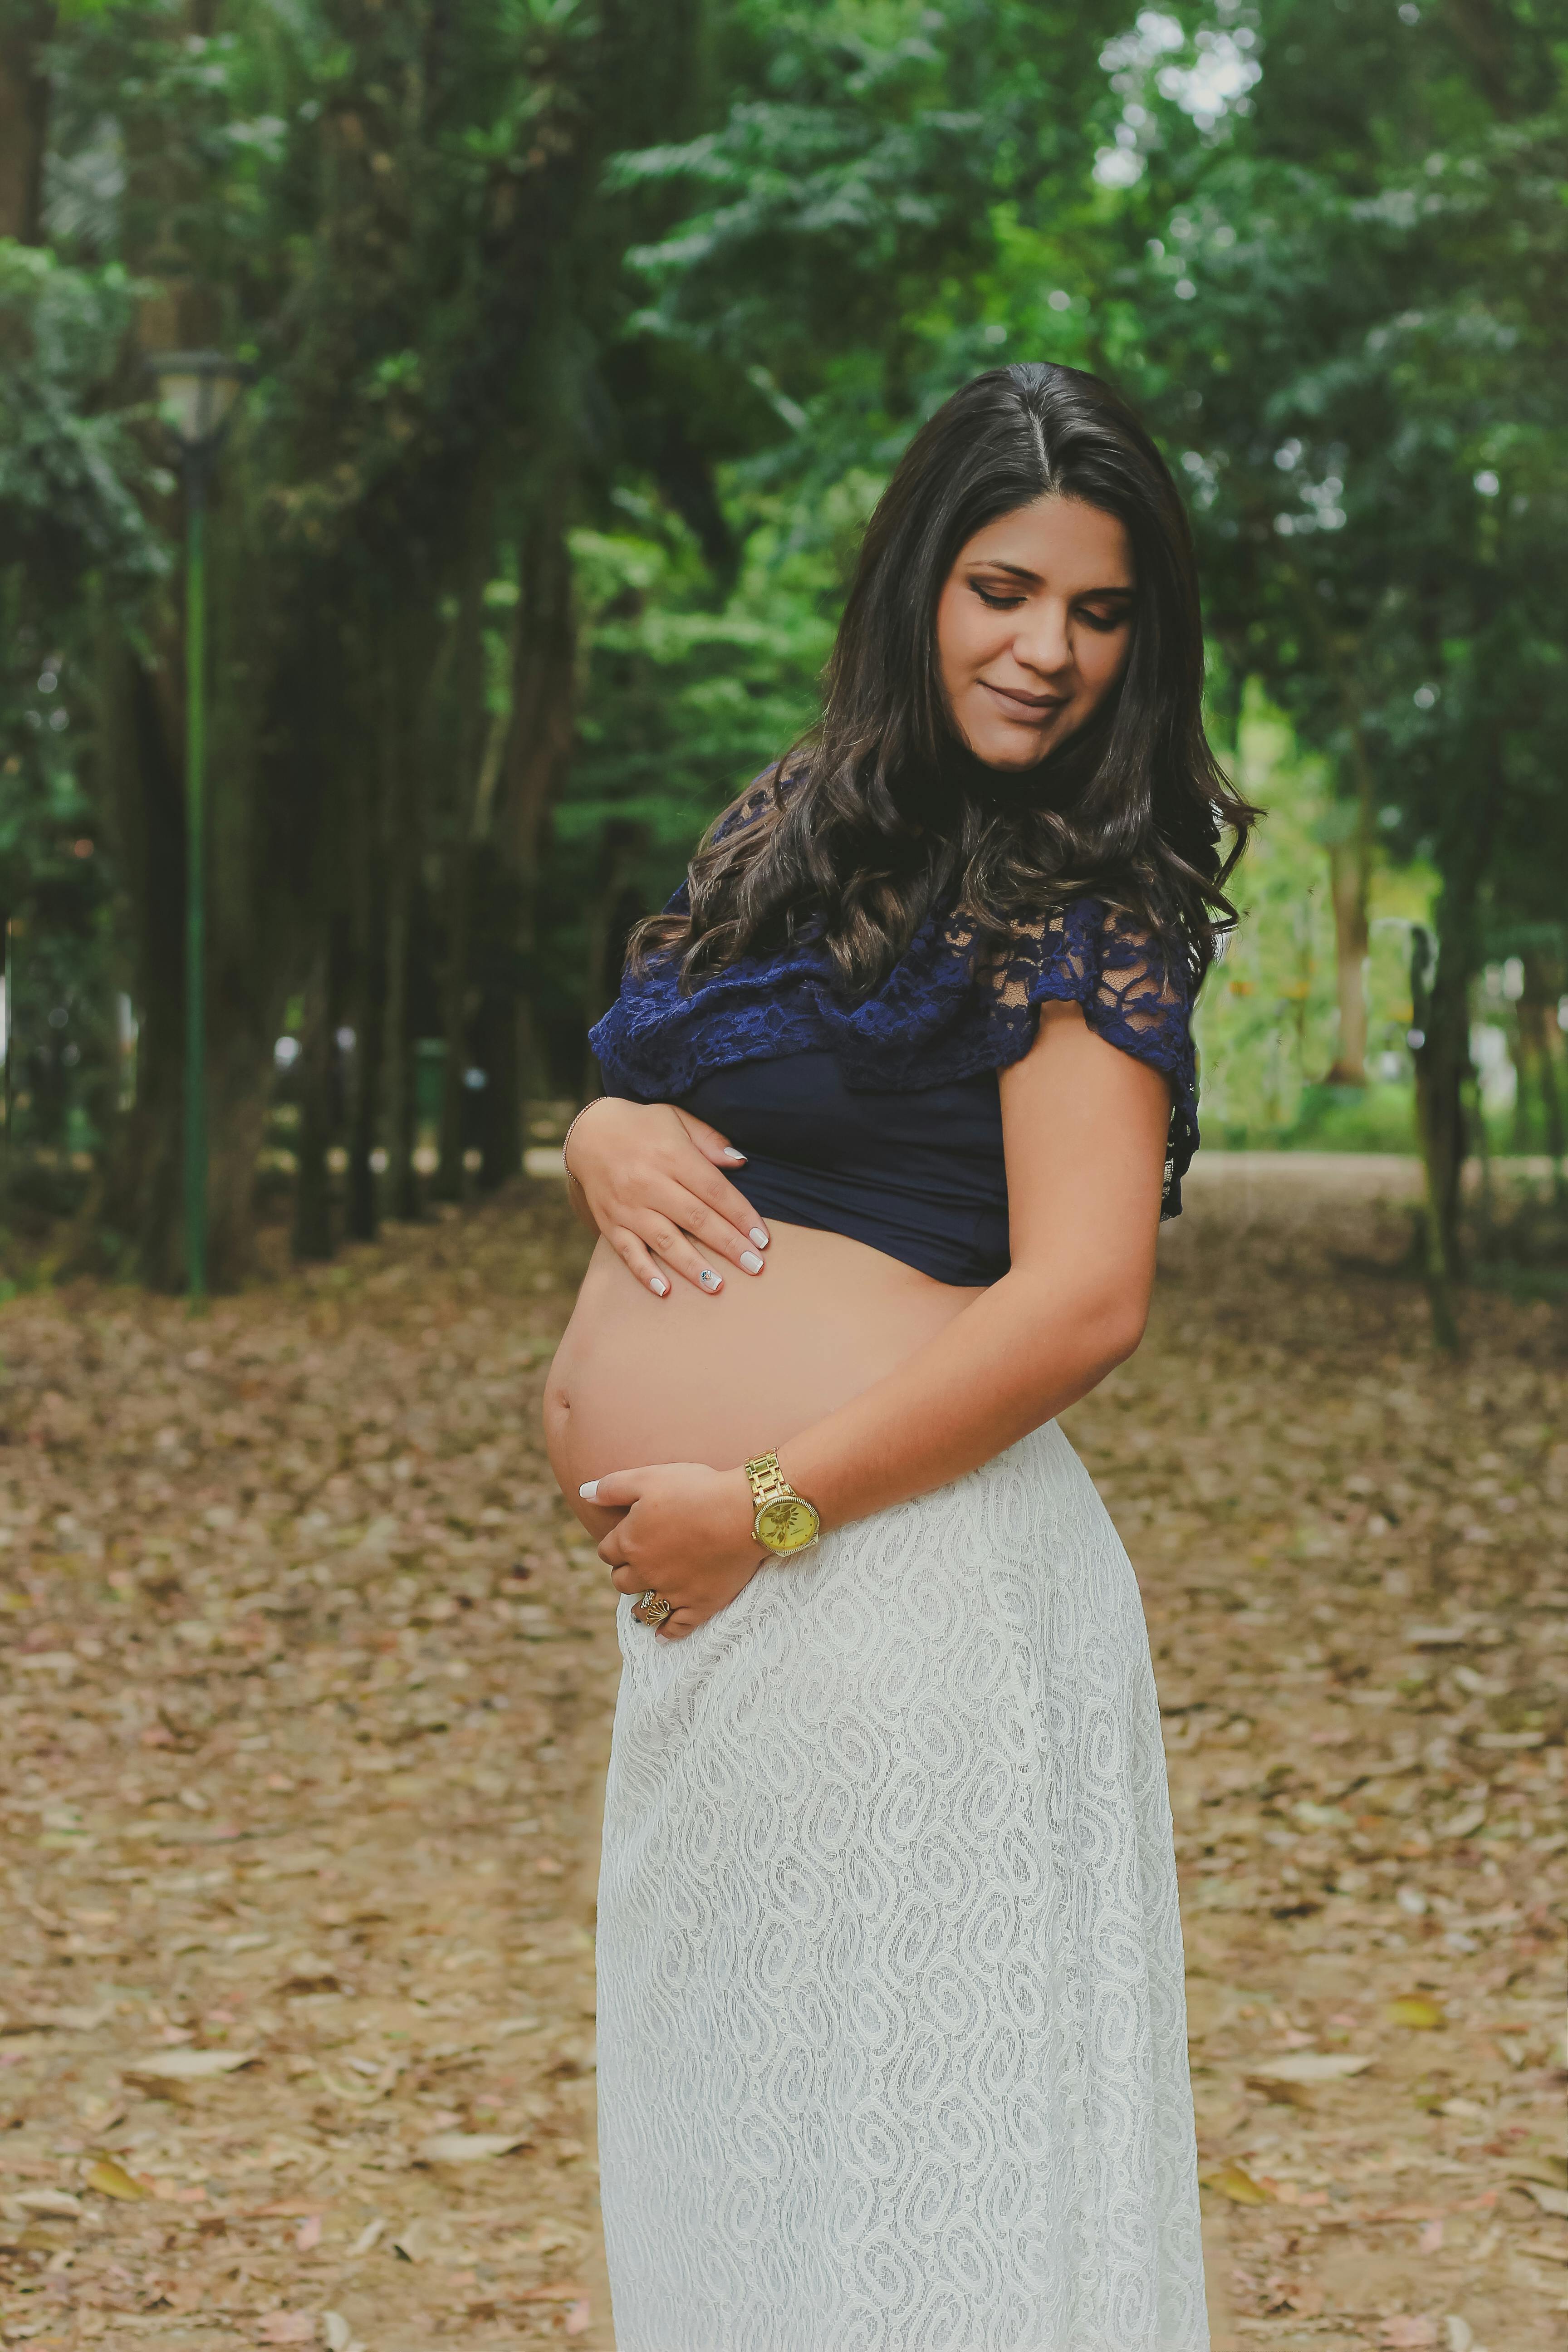 Pregnant Woman · Free Stock Photo